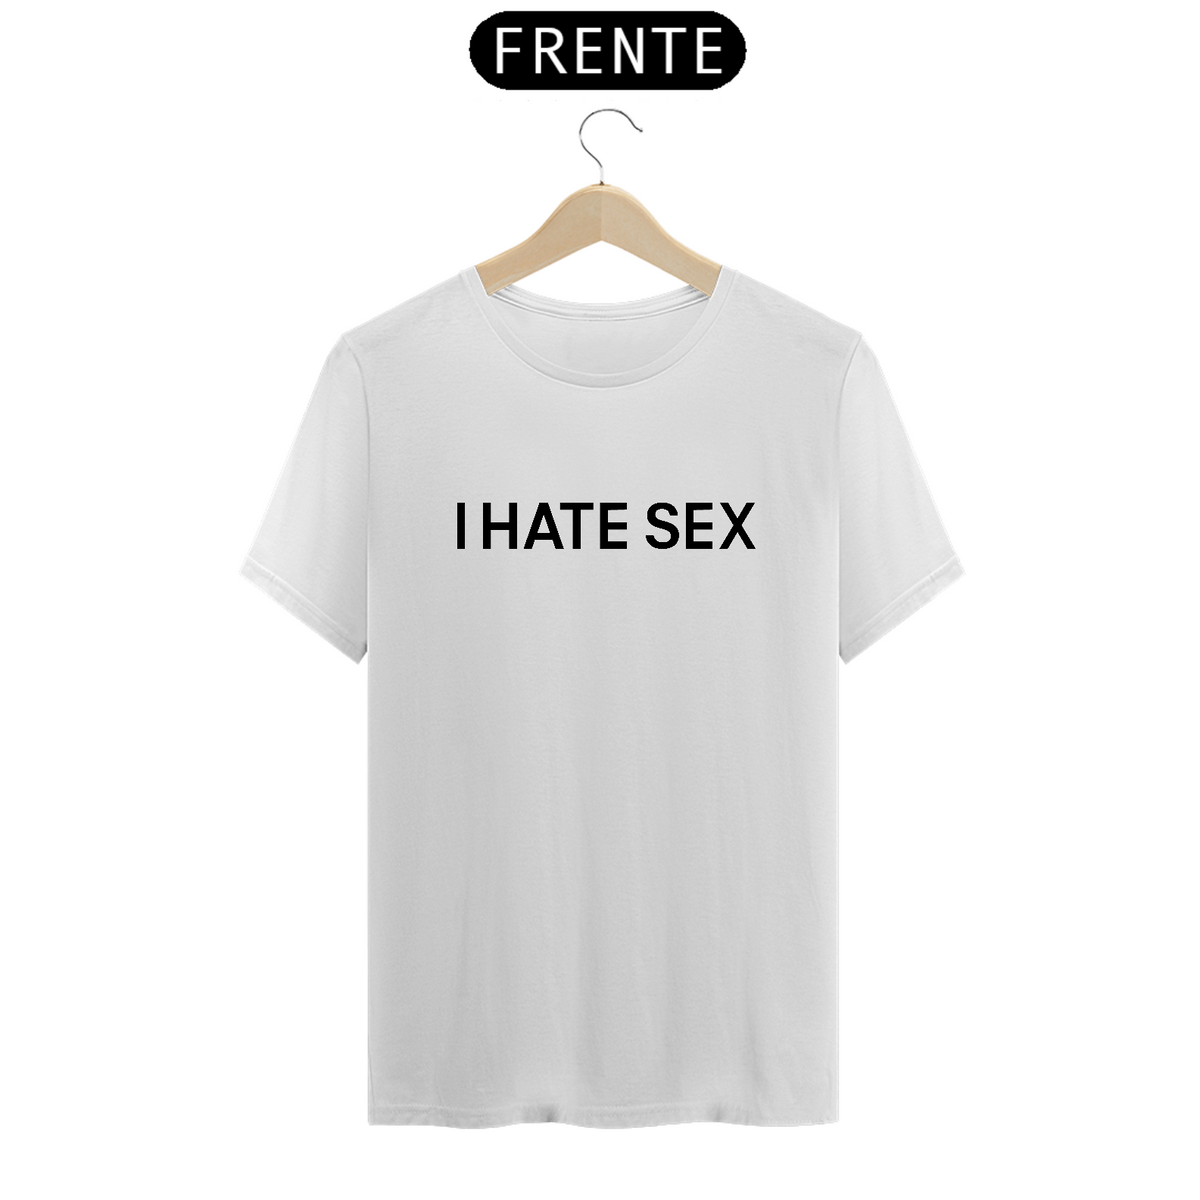 Nome do produto: Camiseta I HATE SEX